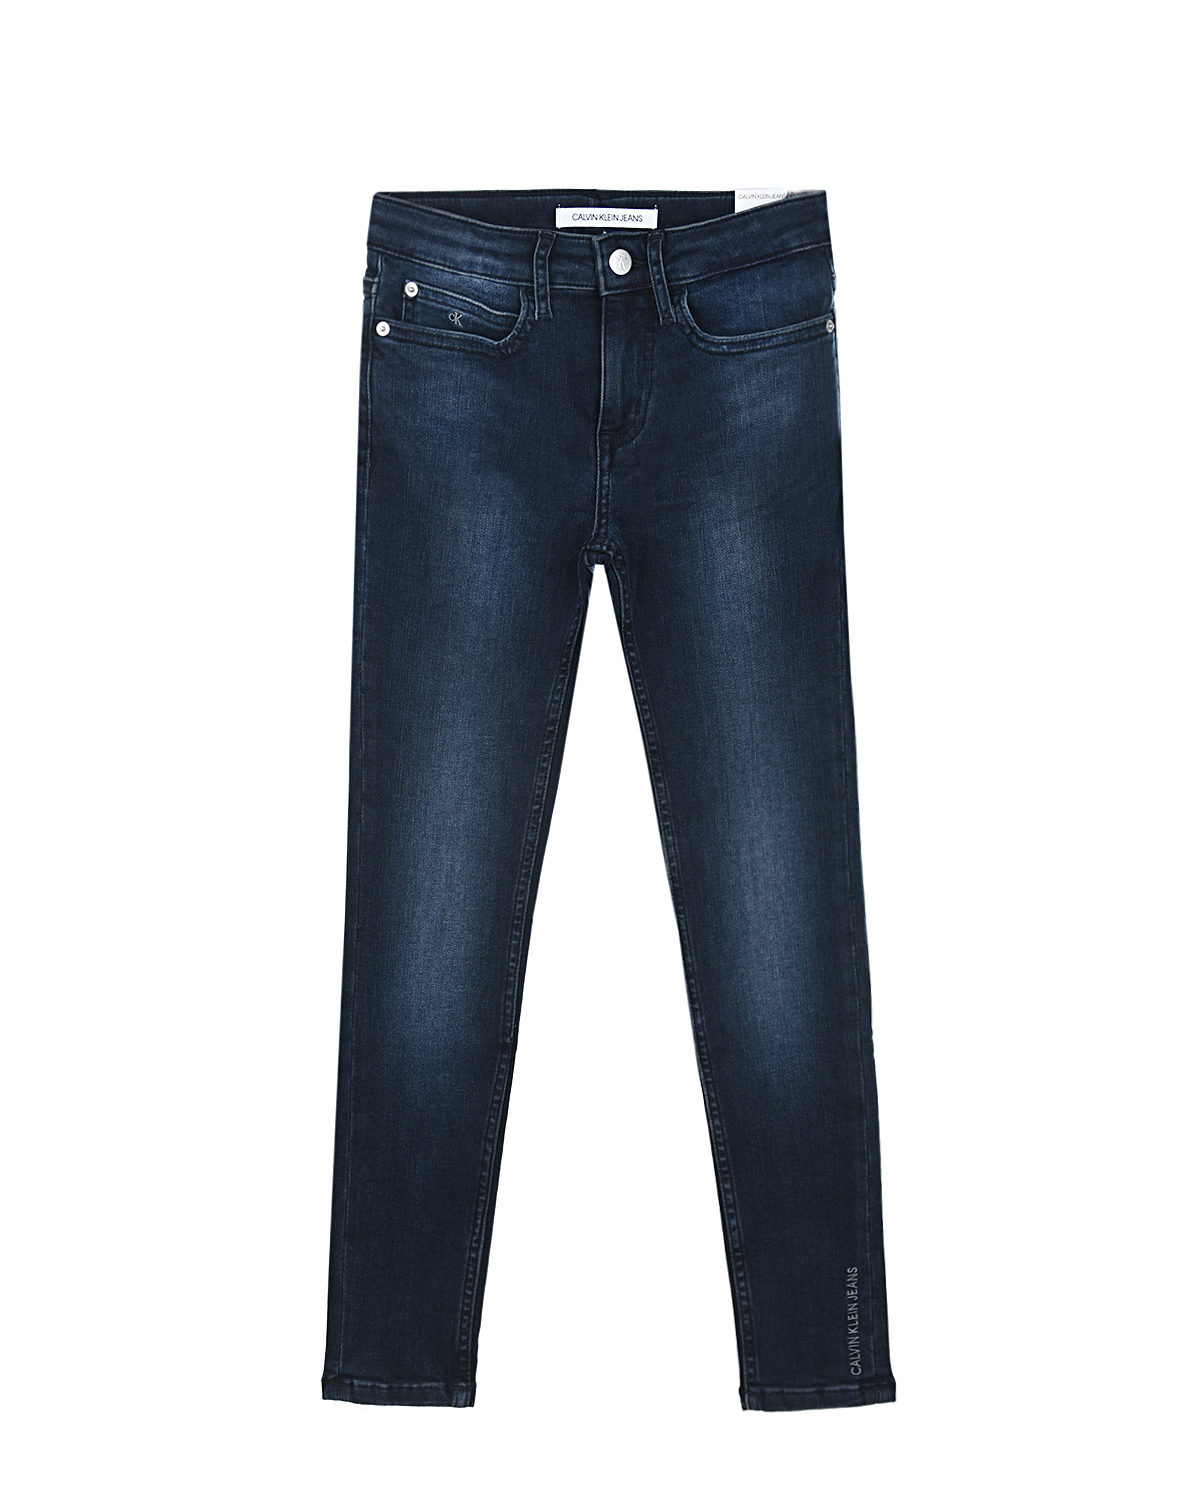 Синие тертые джинсы skinny fit Calvin Klein детские, размер 164, цвет синий - фото 1